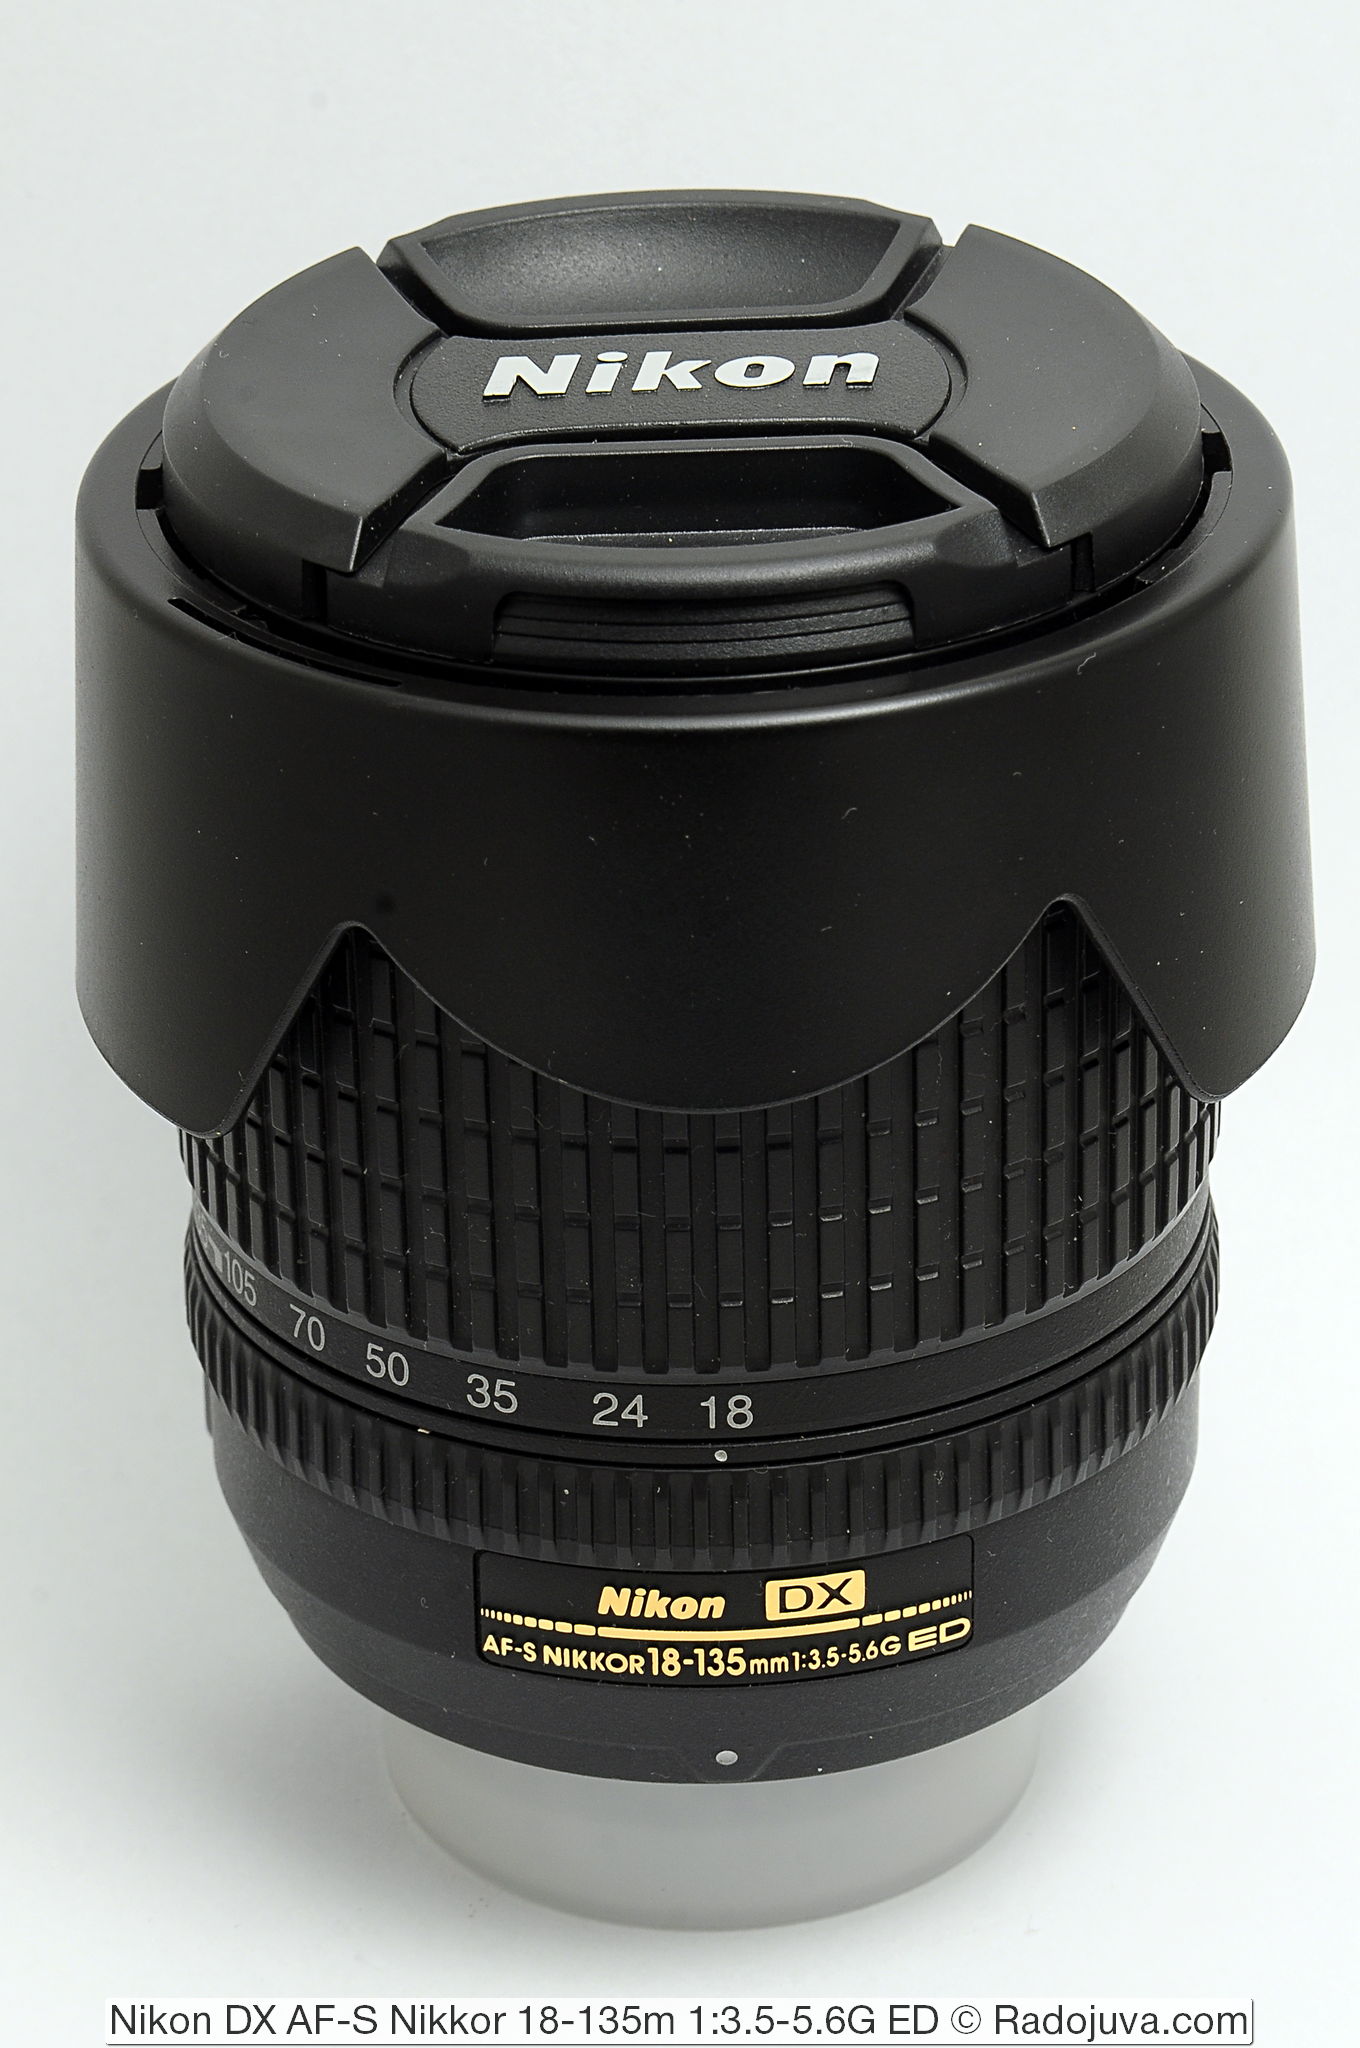 Nikon DX AF-S Nikkor 18-135m 1: 3.5-5.6G ED SWM IF Aspherical